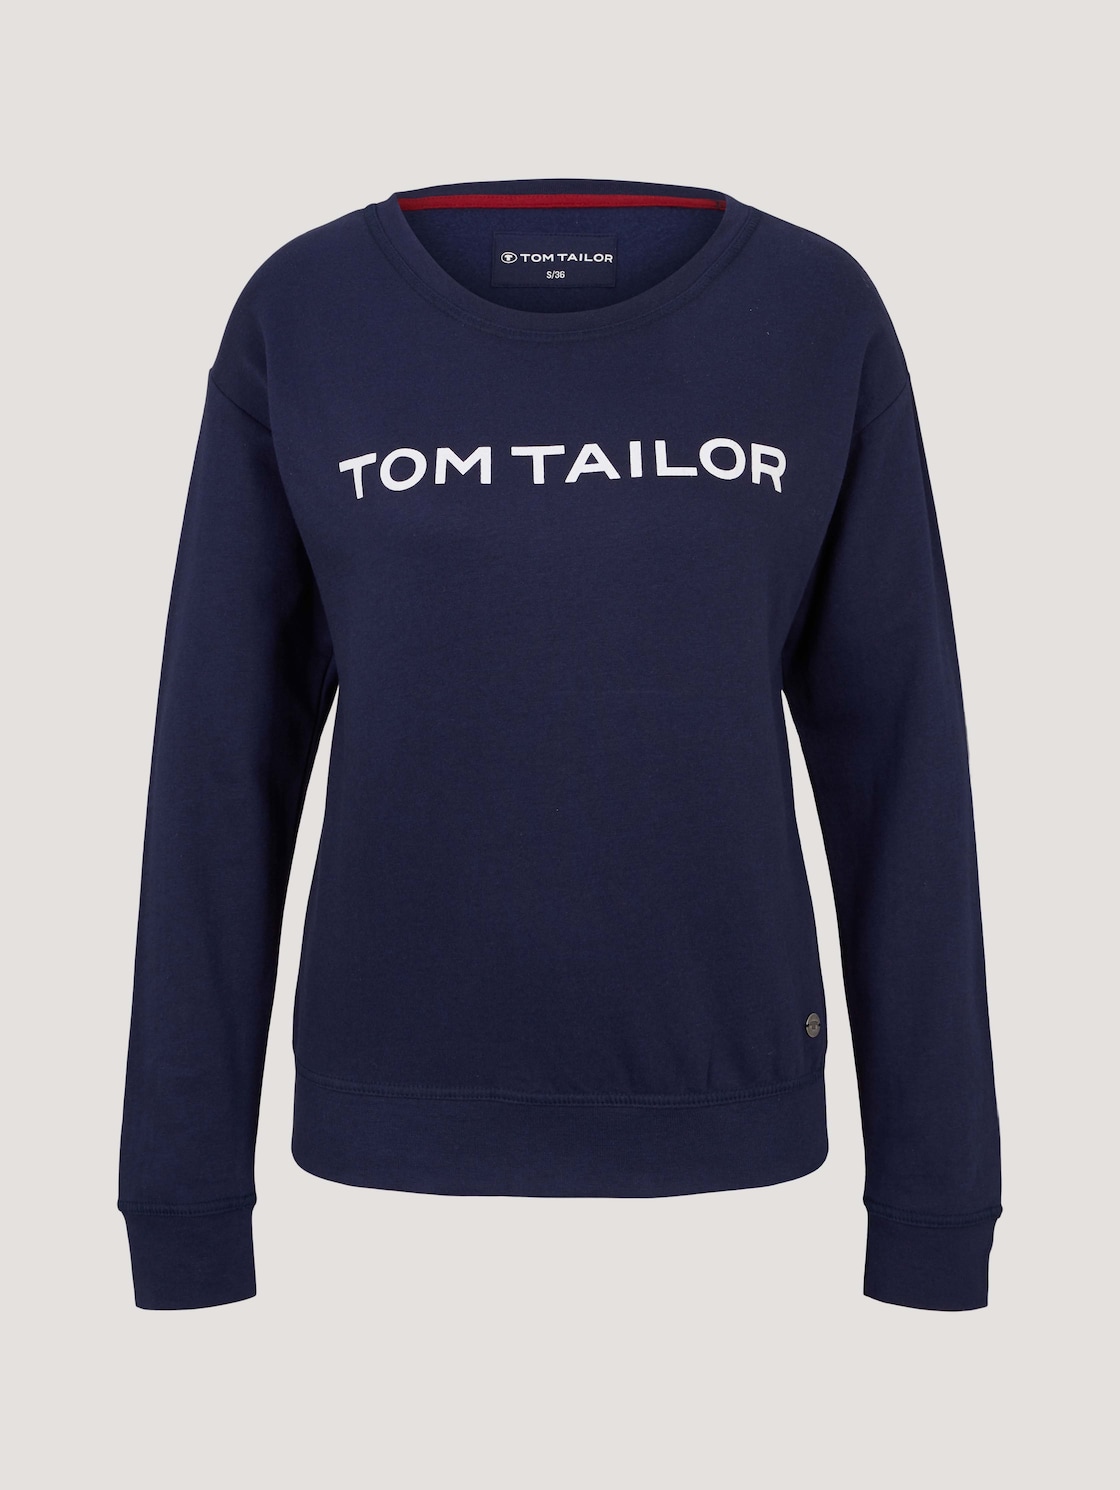 TOM TAILOR Damen Loungewear Sweatshirt, blau, Print, Gr. 42 von Tom Tailor